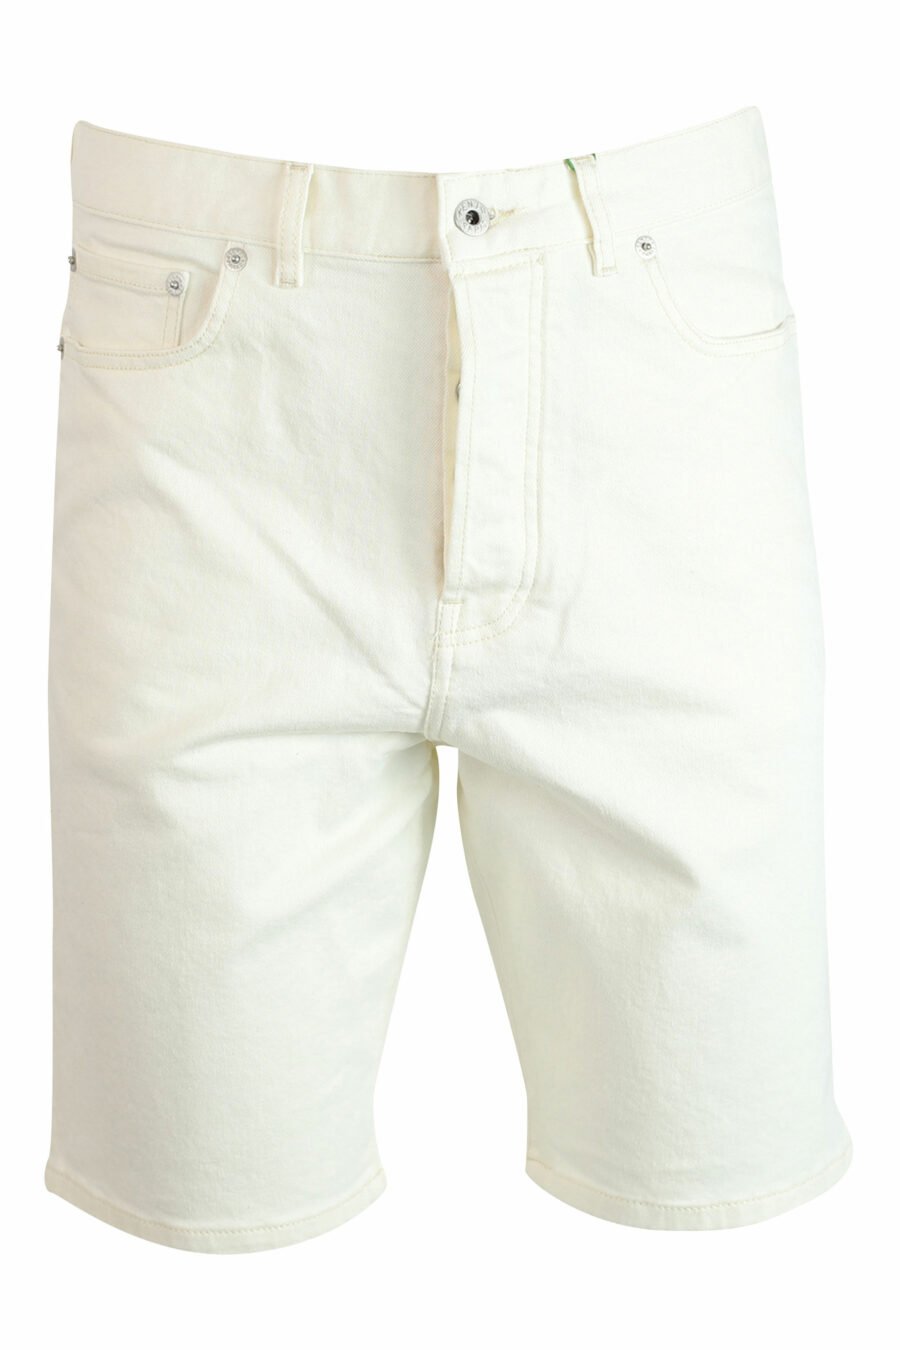 Pantalón vaquero blanco corto con minilogo - 3612230414884